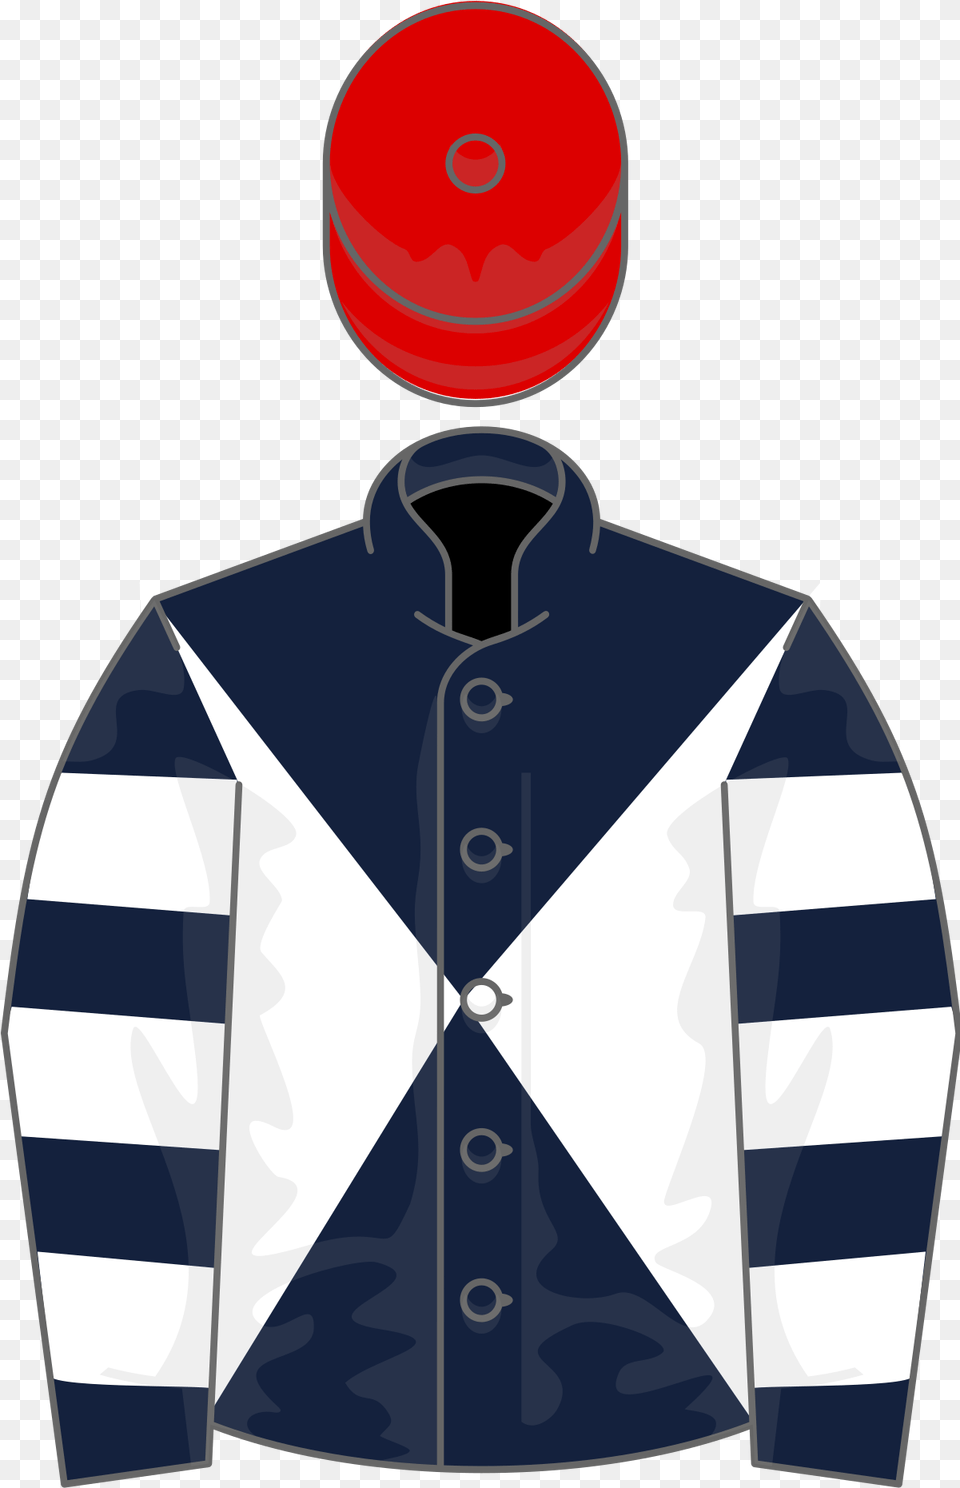 Horse Racing, Clothing, Coat, Jacket, Sleeve Png Image